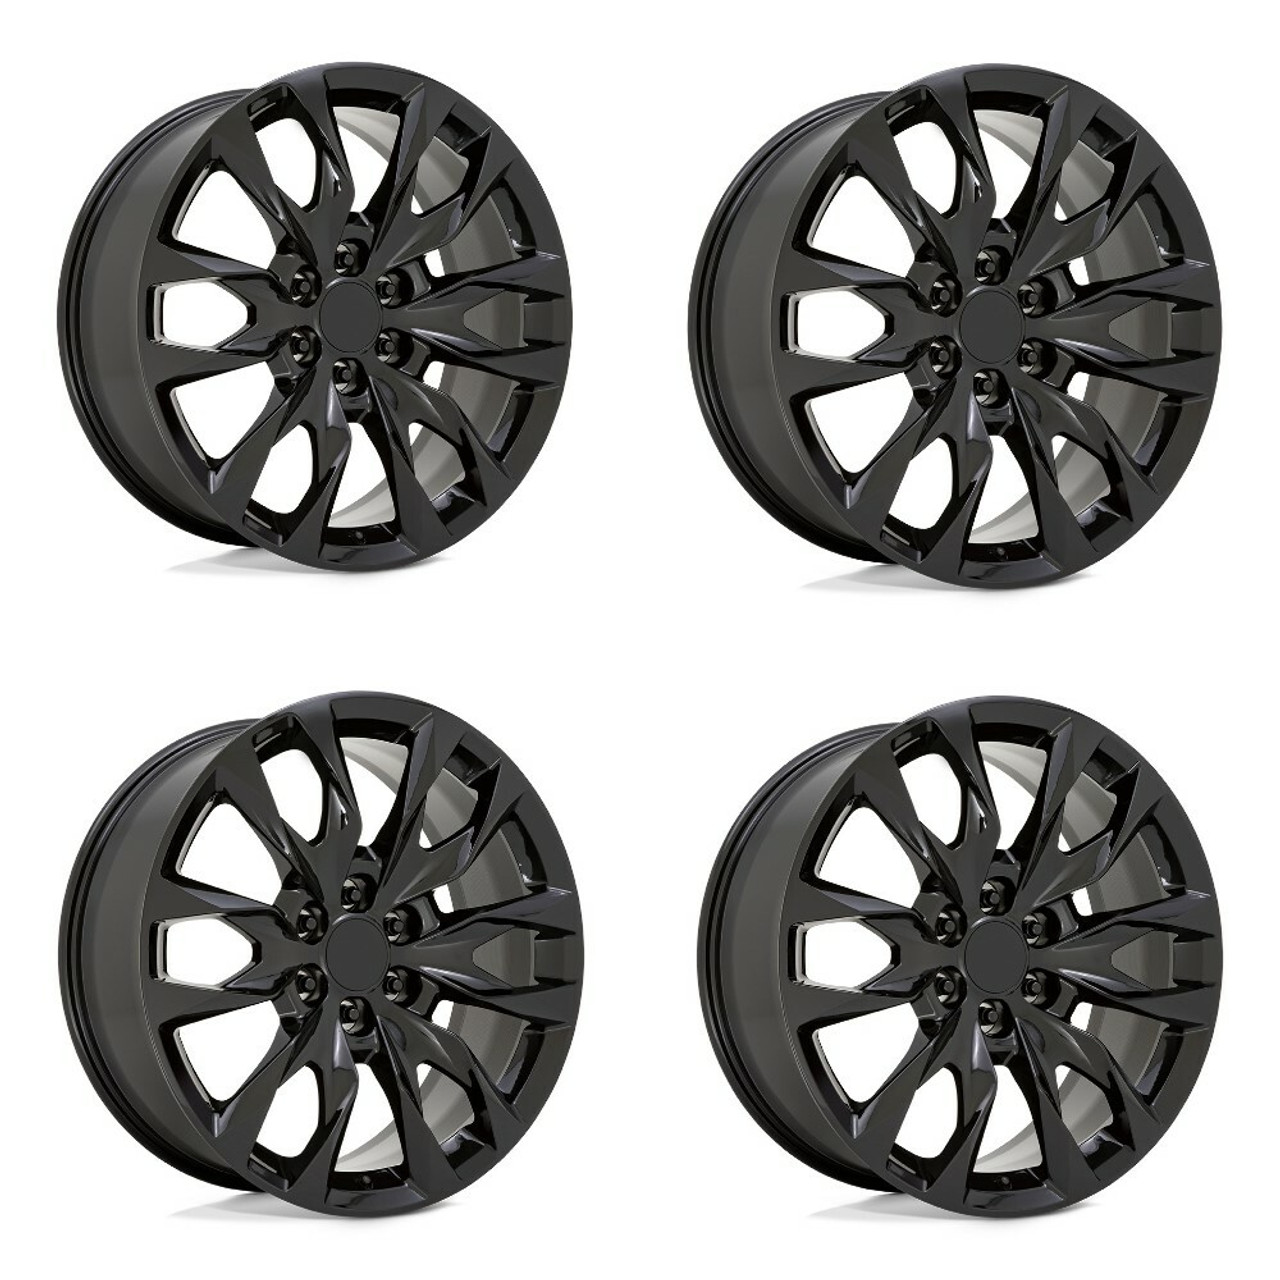 Set 4 Performance Replicas PR210 22x9 6x5.5 Gloss Black Wheels 22" 28mm Rims